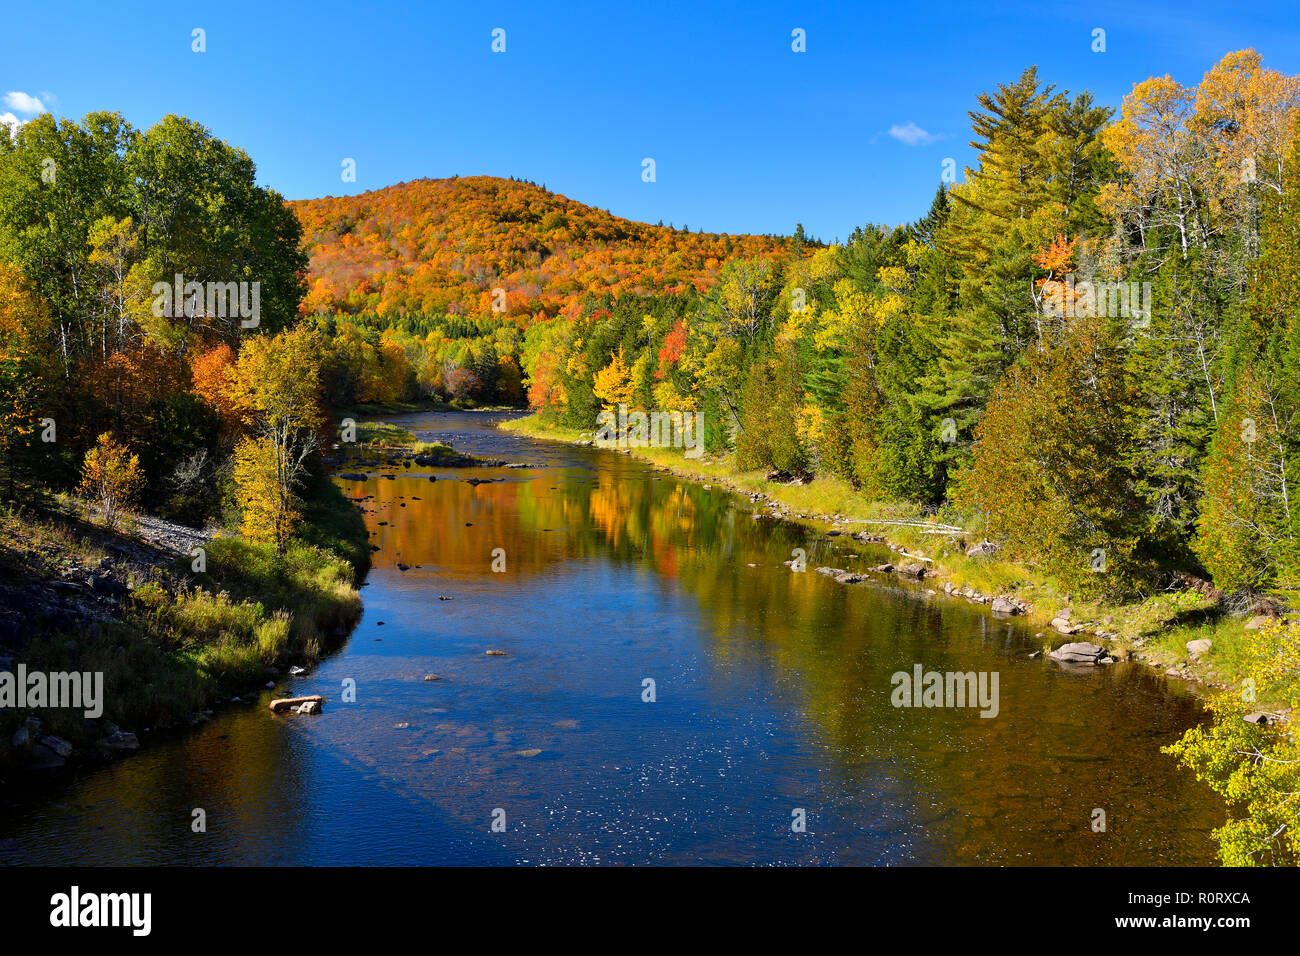 Ein Herbst Landschaften Bild entlang der Hammond River in der Nähe von barnsville New Brunswick Kanada. Stockfoto